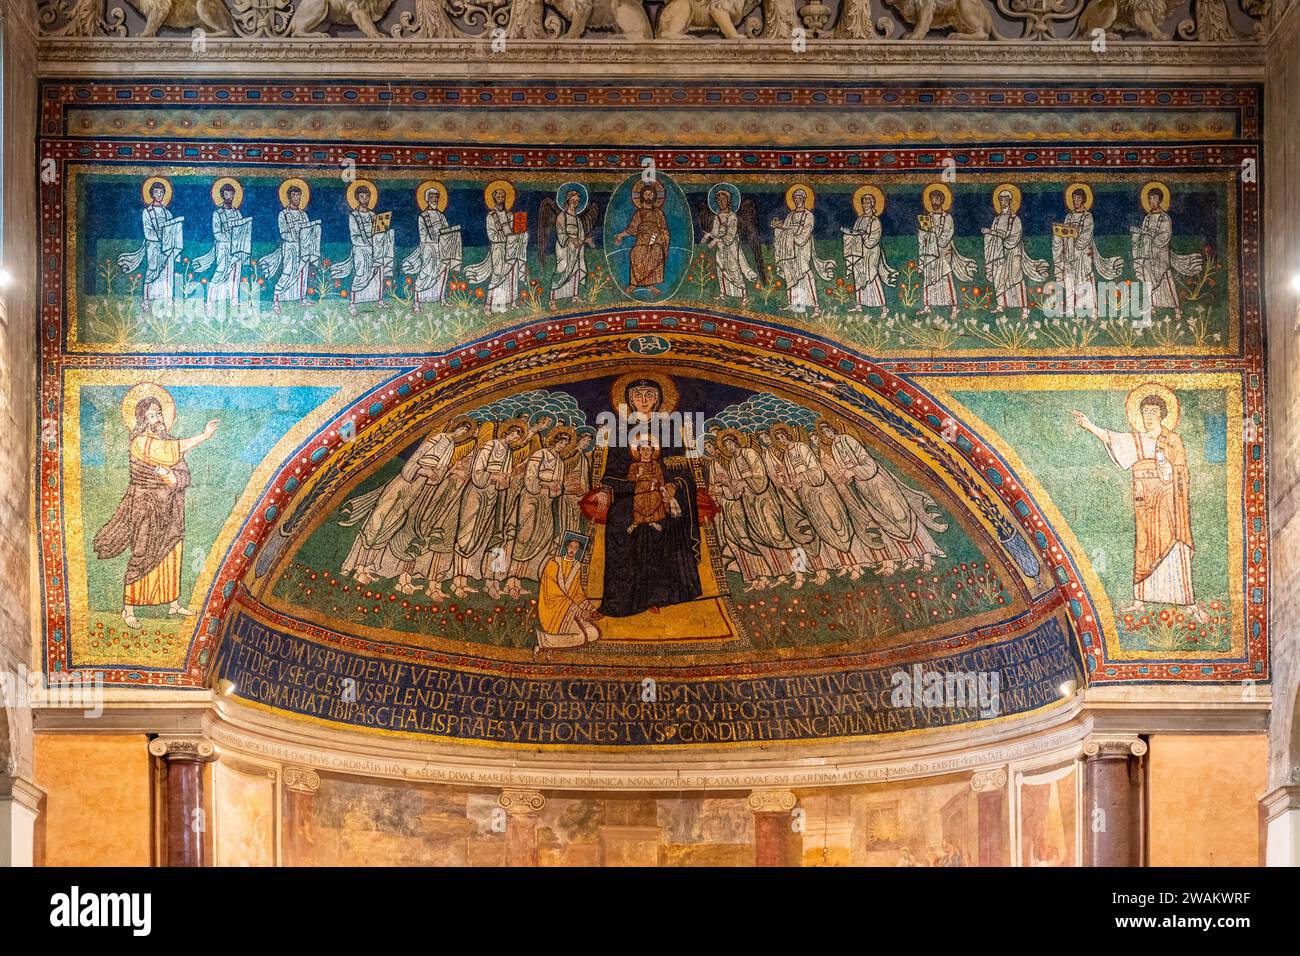 Particolare del mosaico religioso raffigurante vari santi cattolici all'interno della basilica di Santa Maria in Dominica alla Navicella a Roma Foto Stock